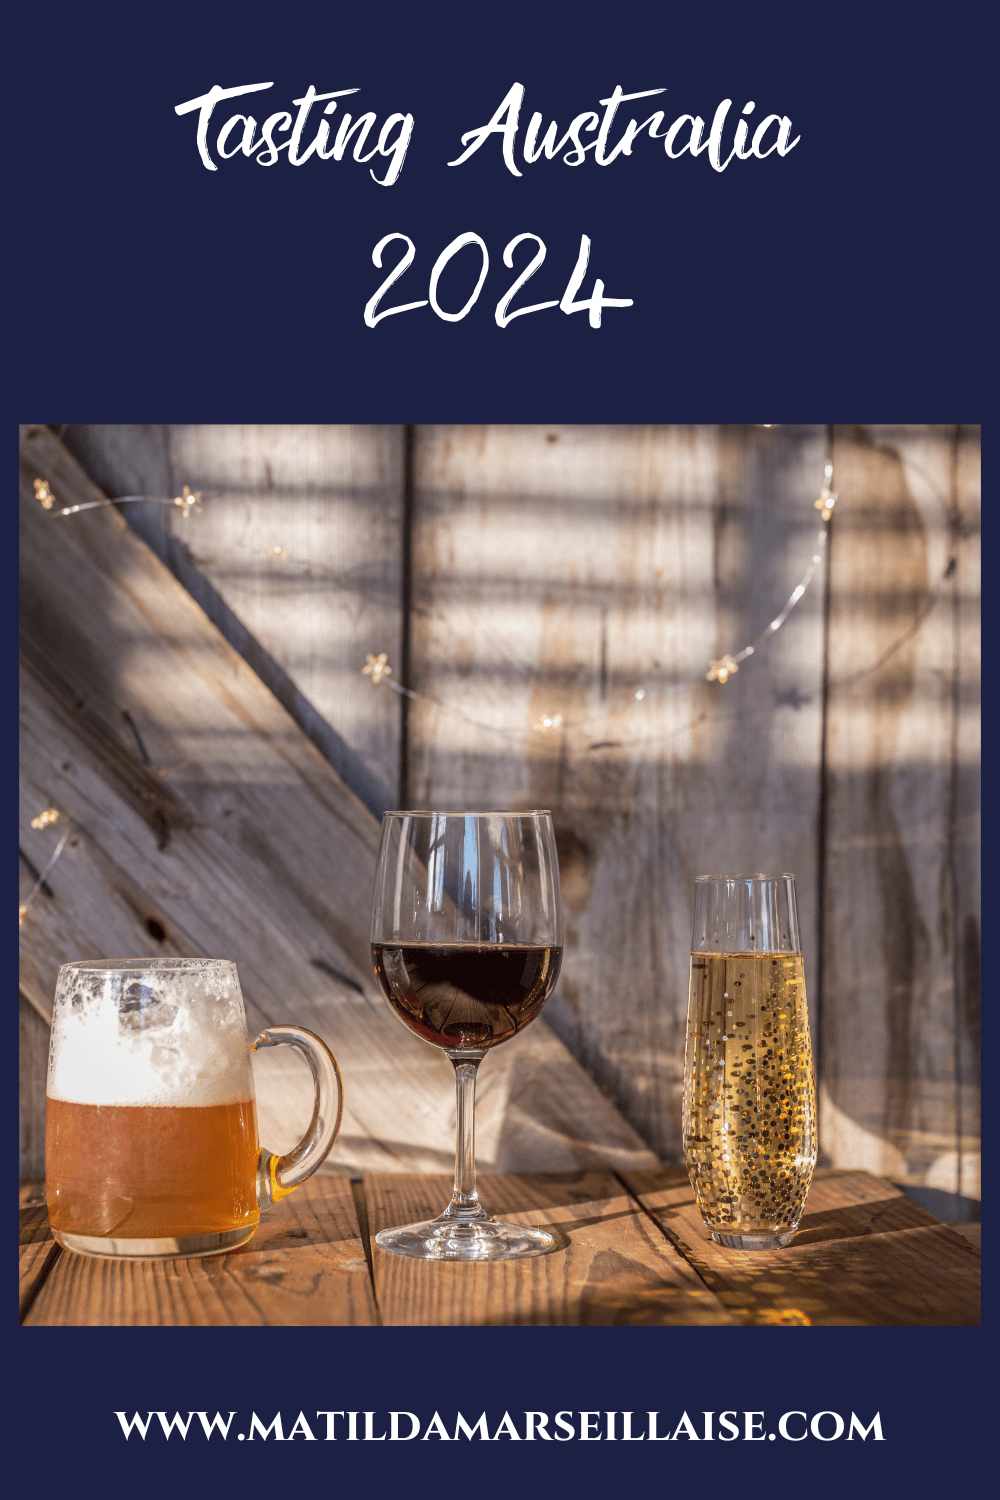 Les évènements autour du vin français, du champagne et de la bière belge à l’occasion de Tasting Australia 2024